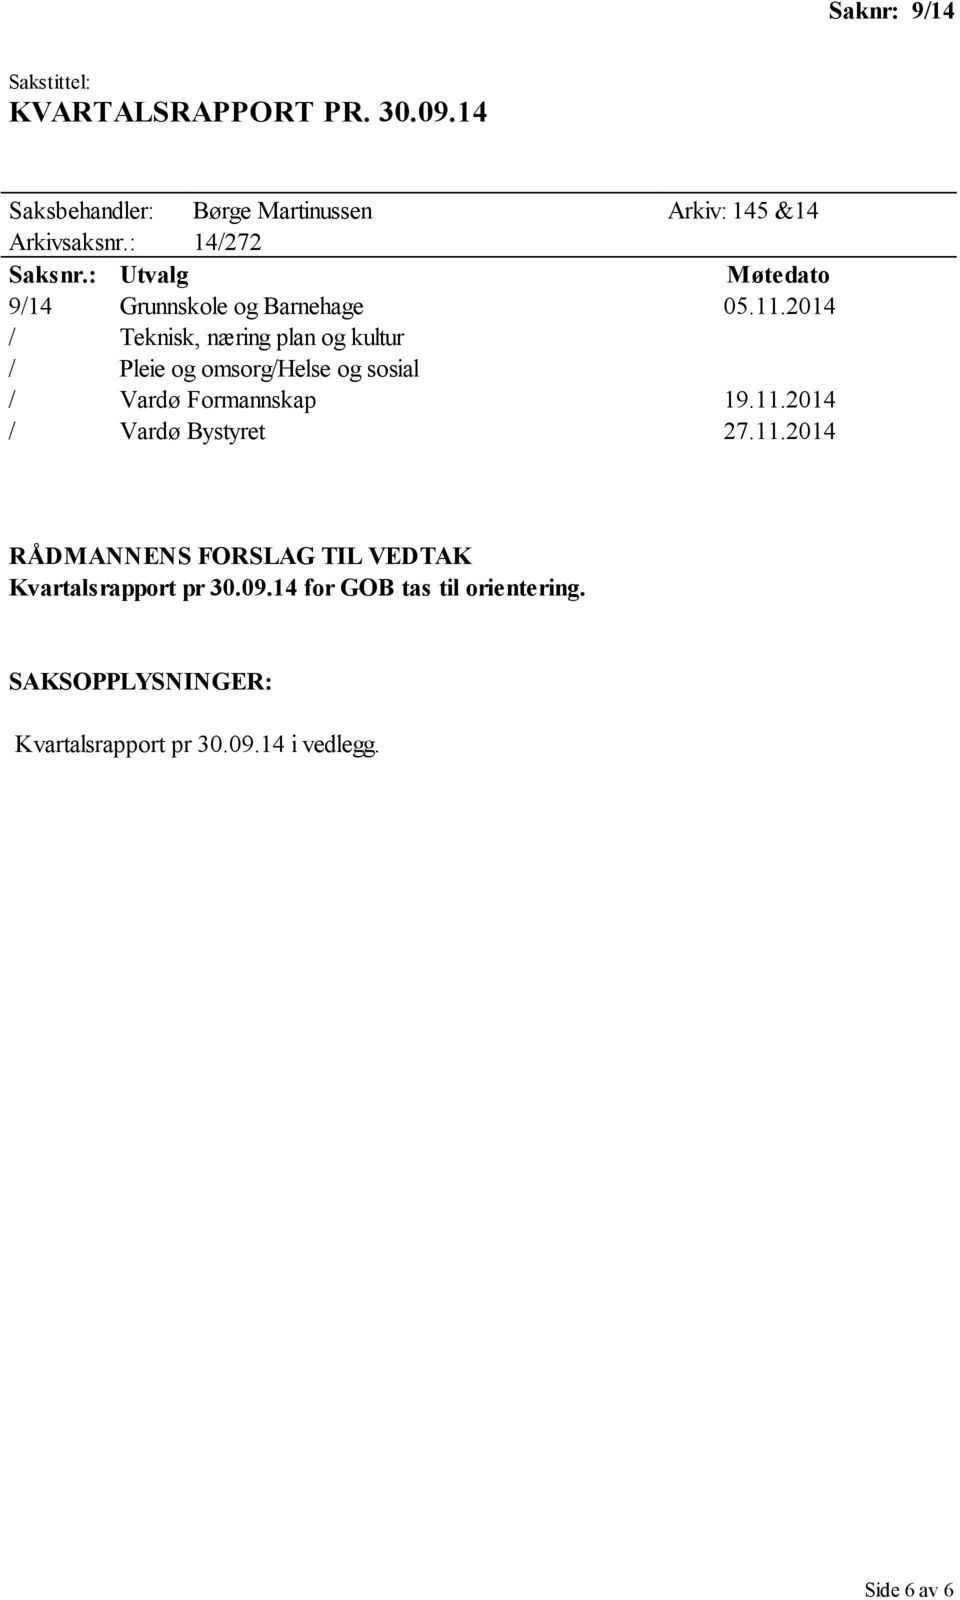 2014 / Teknisk, næring plan og kultur / Pleie og omsorg/helse og sosial / Vardø Formannskap 19.11.